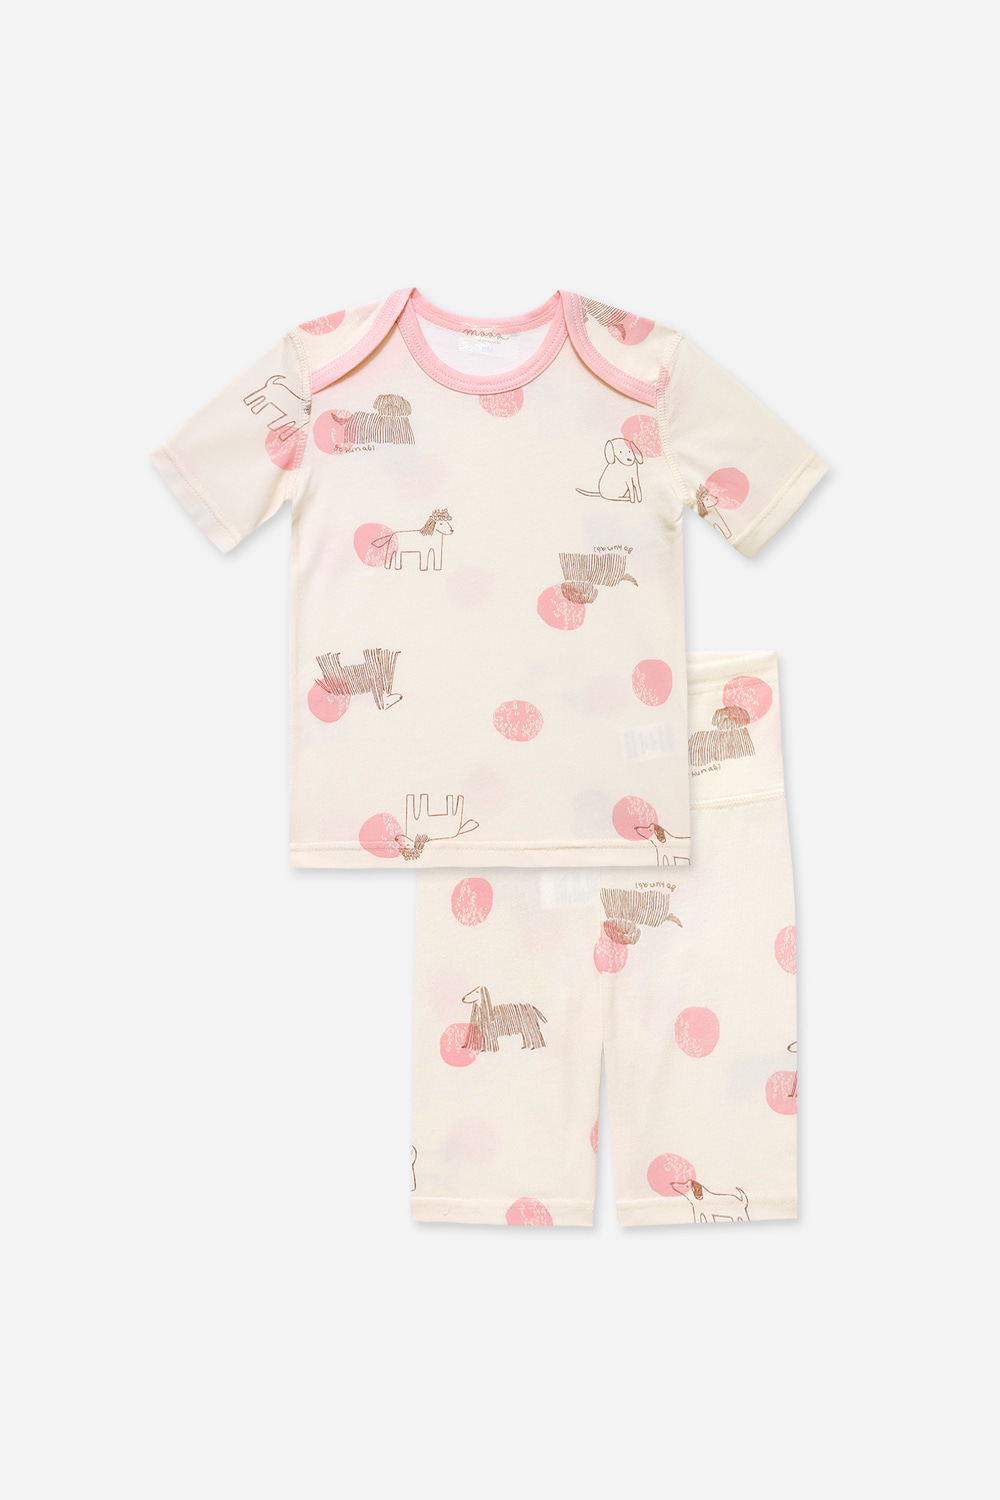 핑크펫 베이비-5부잠옷, 홈웨어, 아동내복, 아동속옷,성인잠옷,고후나비